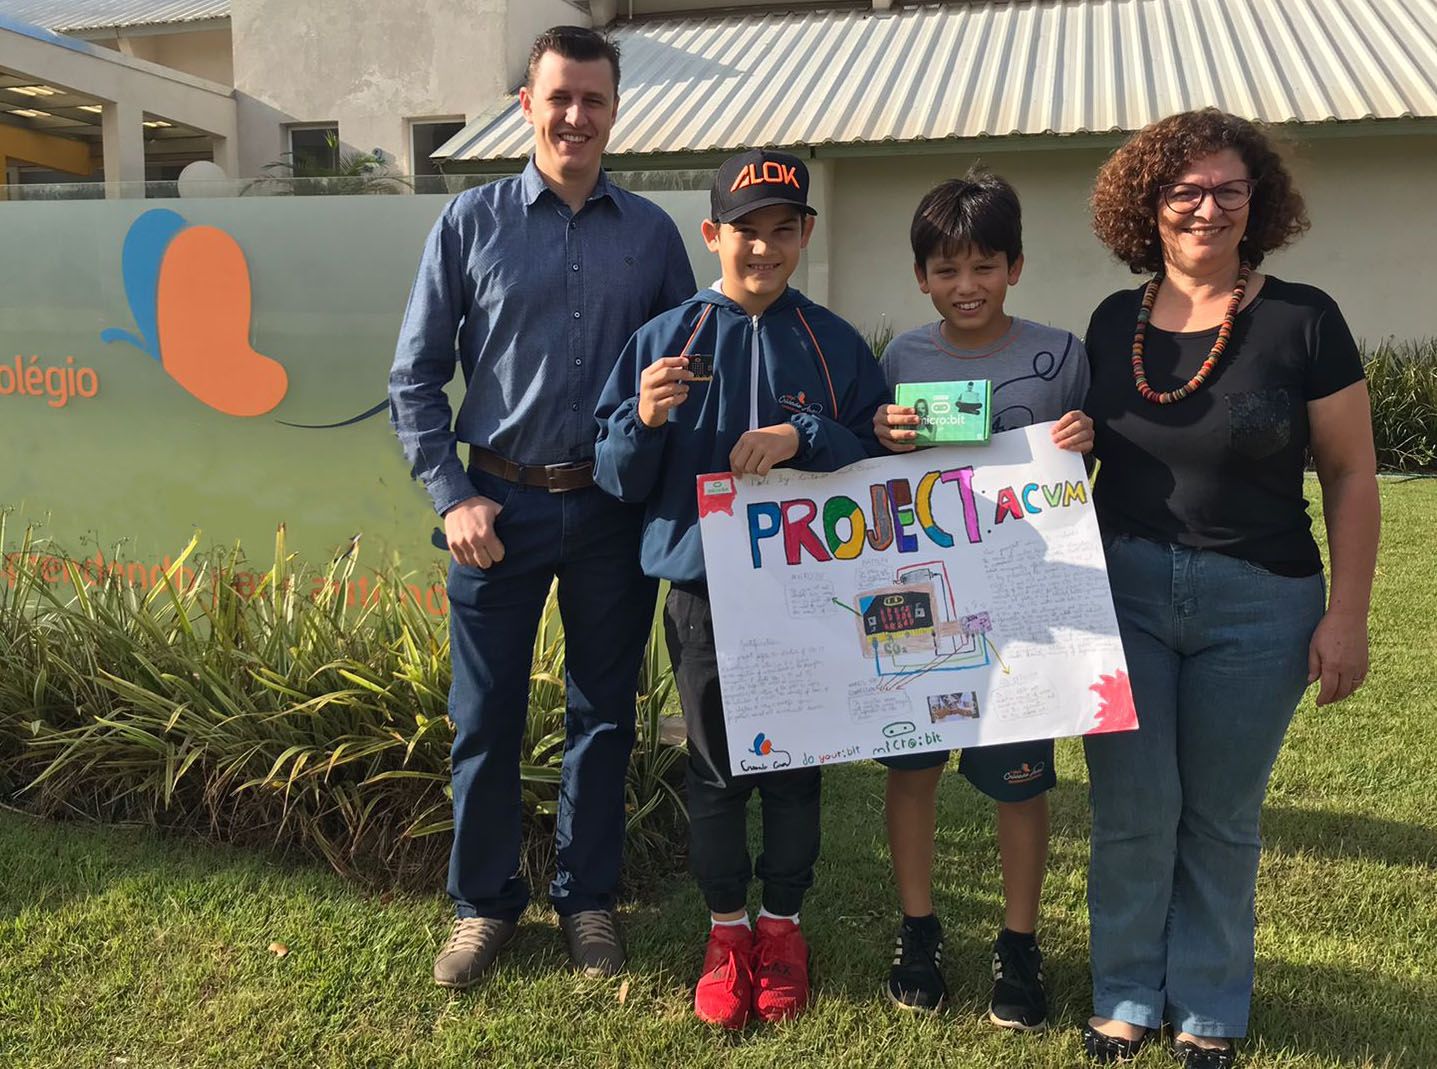 Vinicius et Antonio tenant leur affiche de design à l'extérieur de l'école avec leurs professeurs